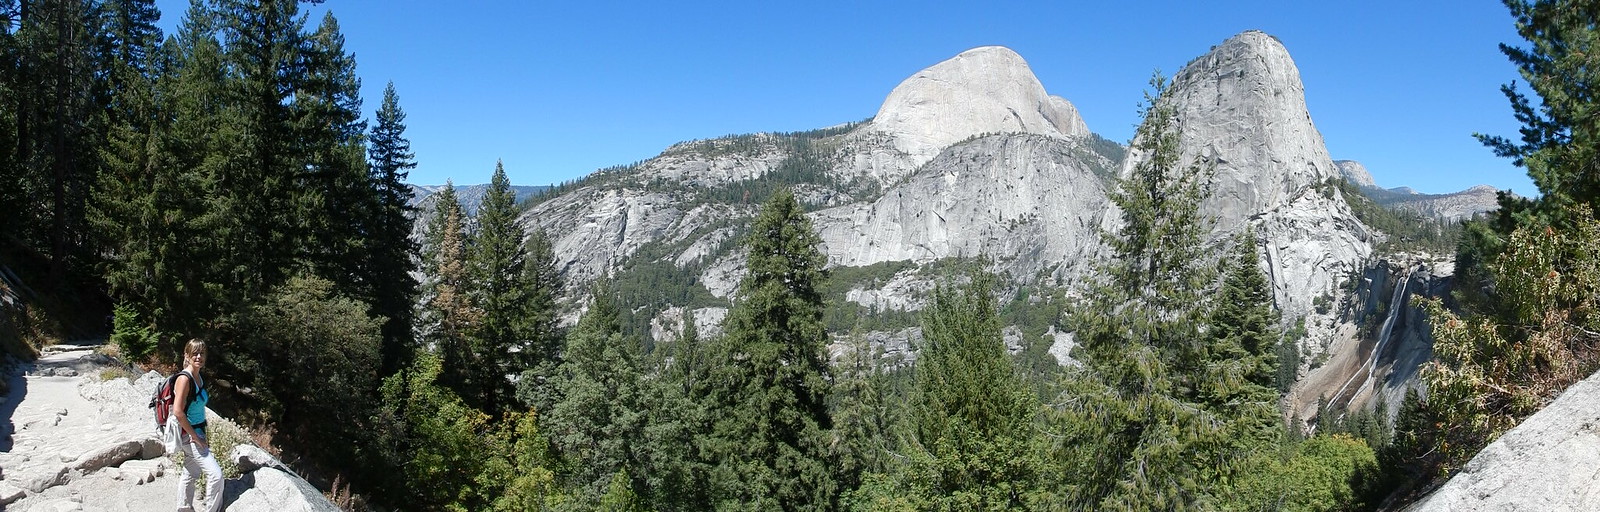 Yosemite National Park: Panorama Trail - Costa oeste de Estados Unidos: 25 días en ruta por el far west (1)